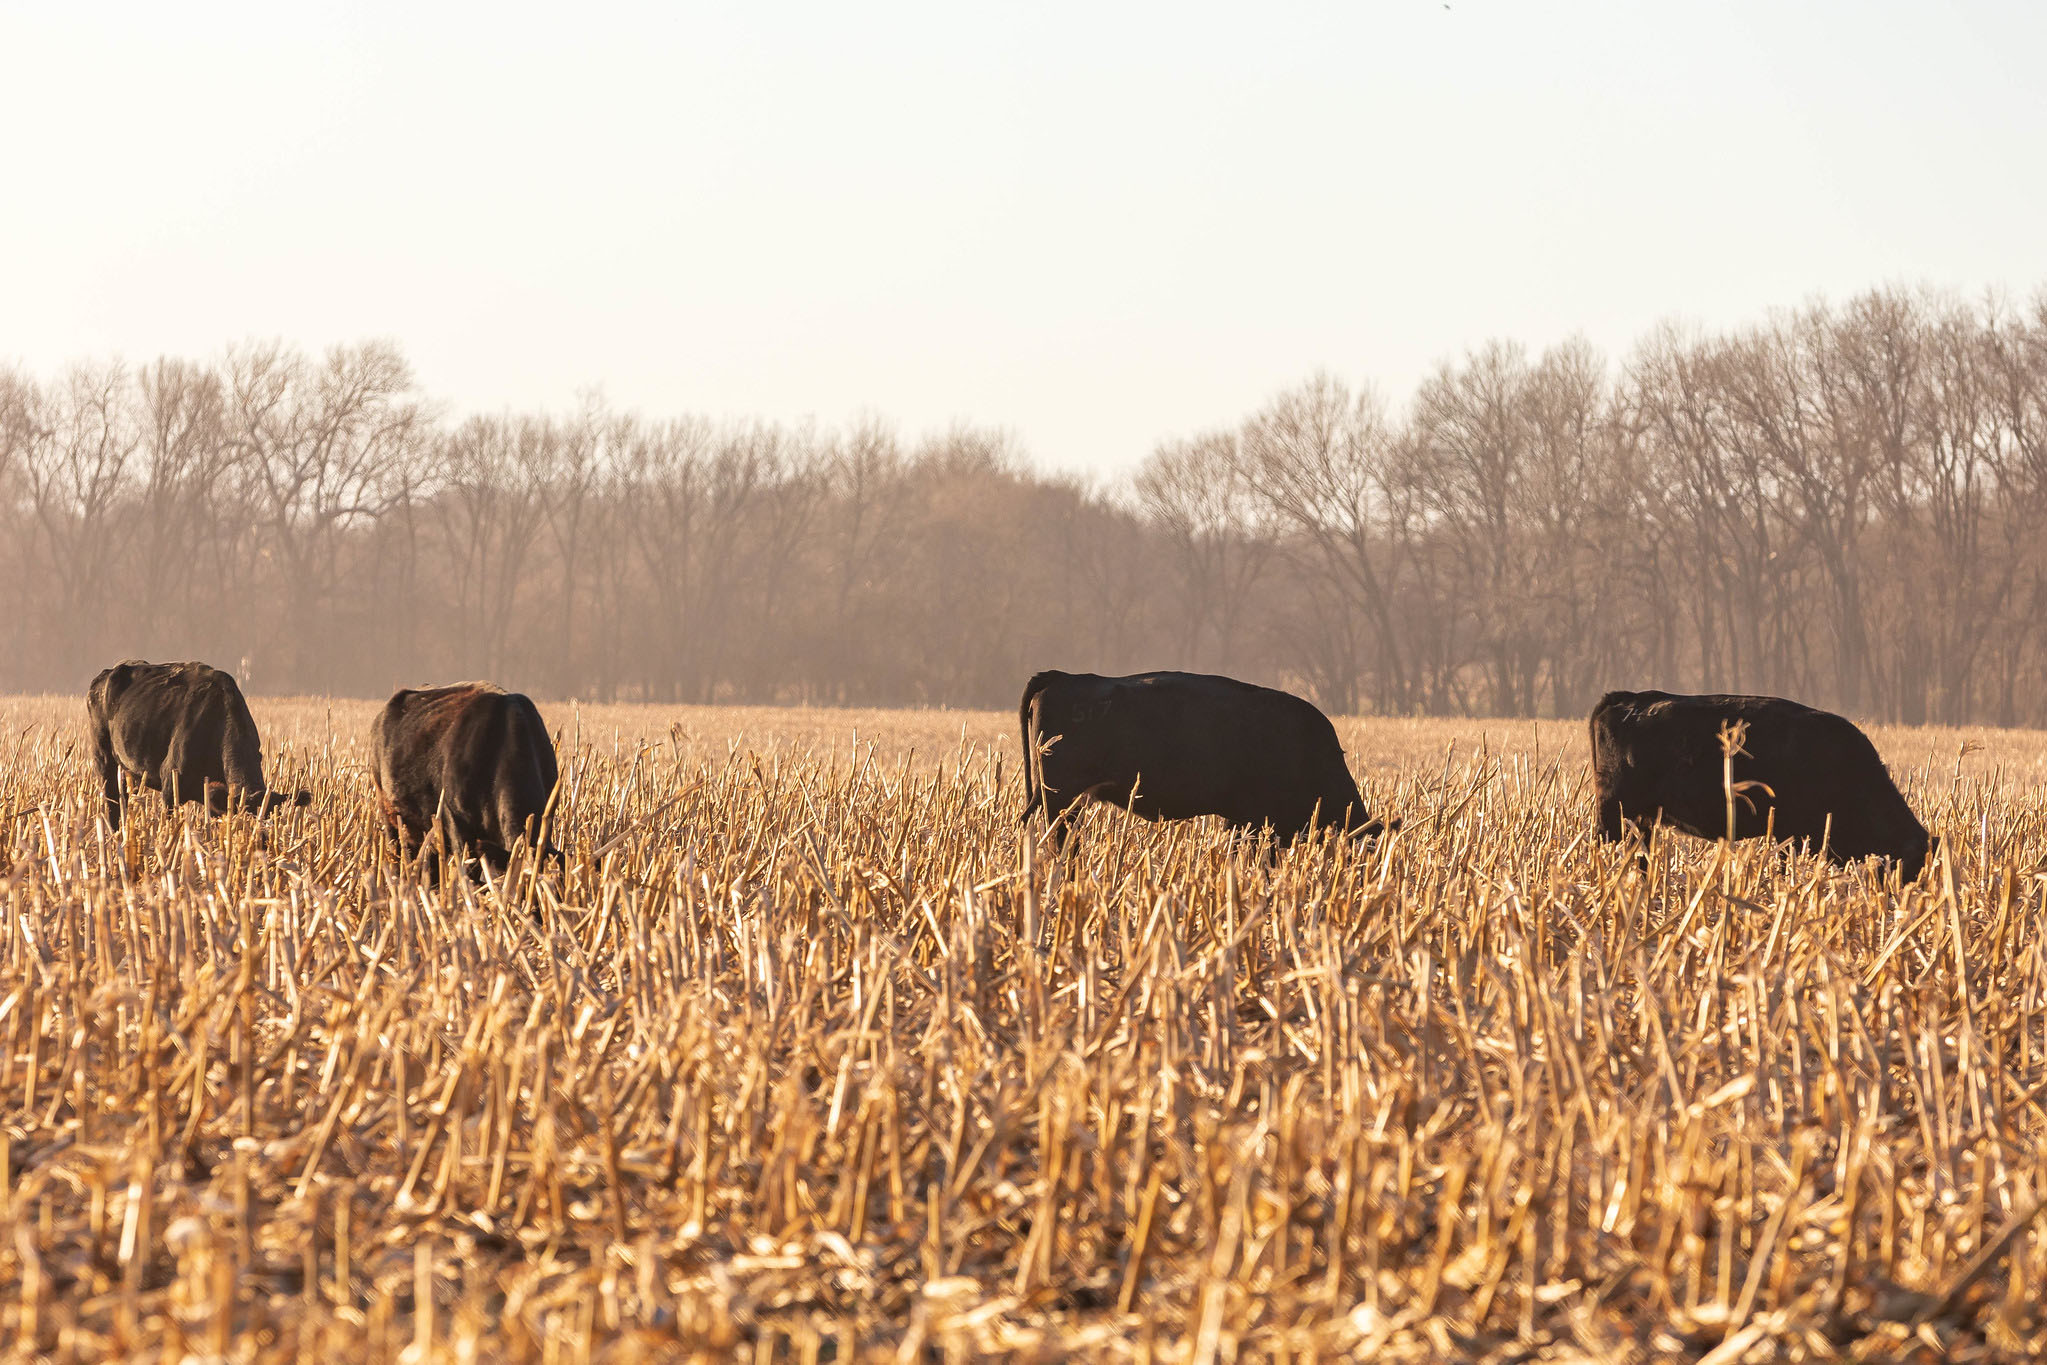 cattle on corn stalks